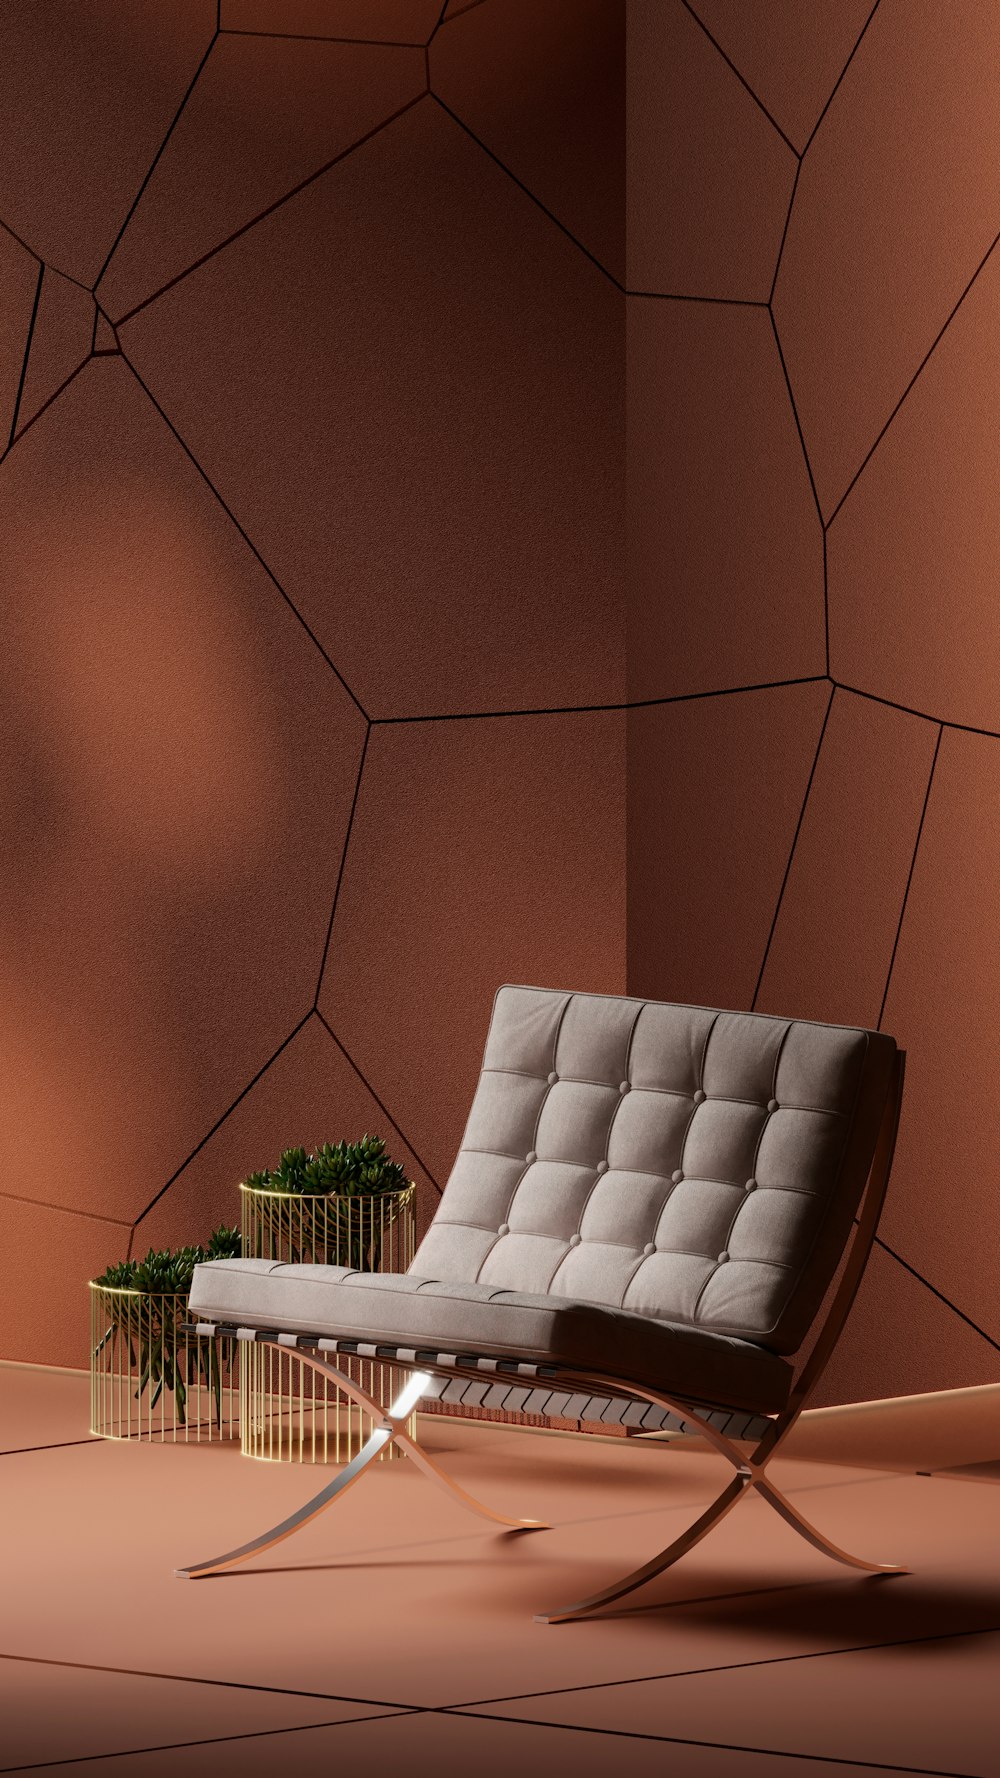 una silla y una planta en una habitación